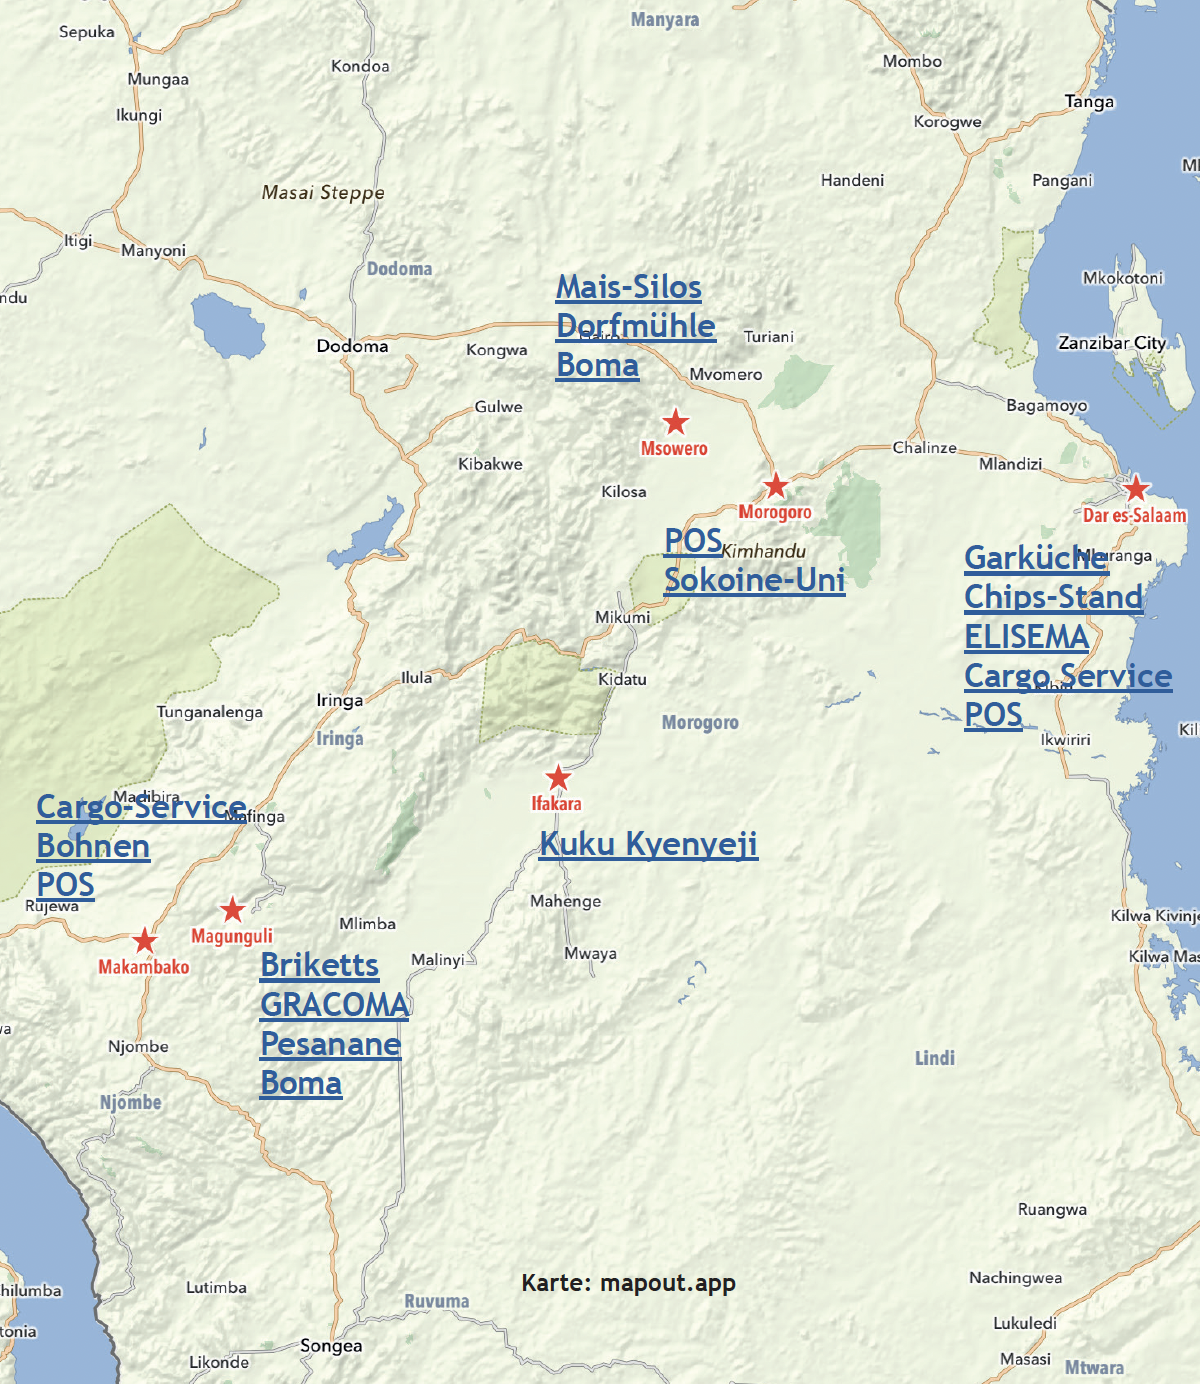 Geografische Karte von Tansania als PDF mit Links zu den Ventures.